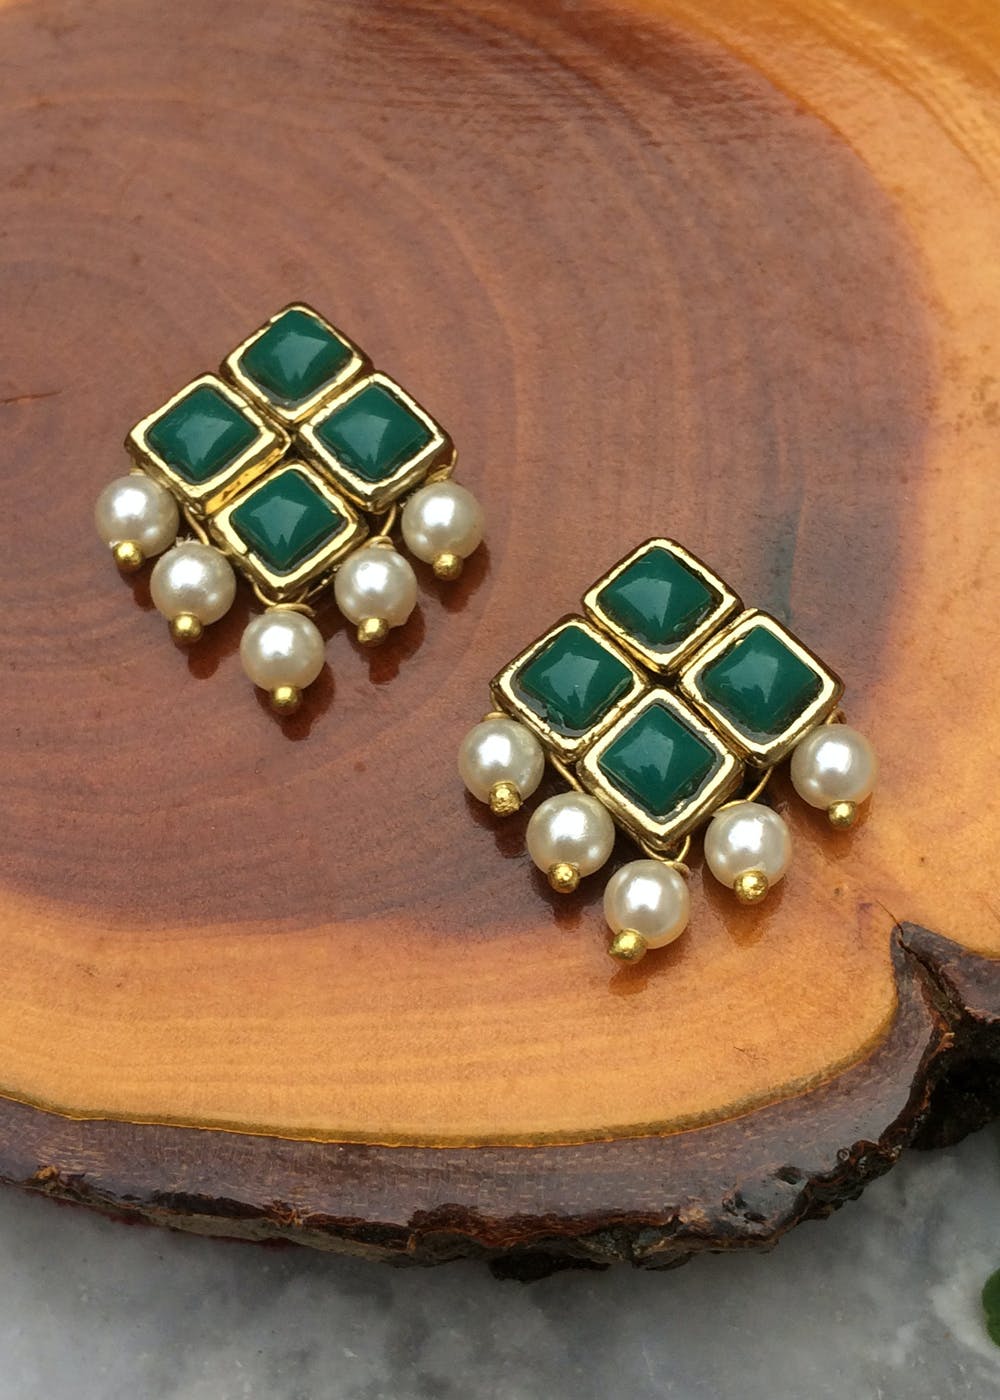 Details 229+ green stone earrings gold best